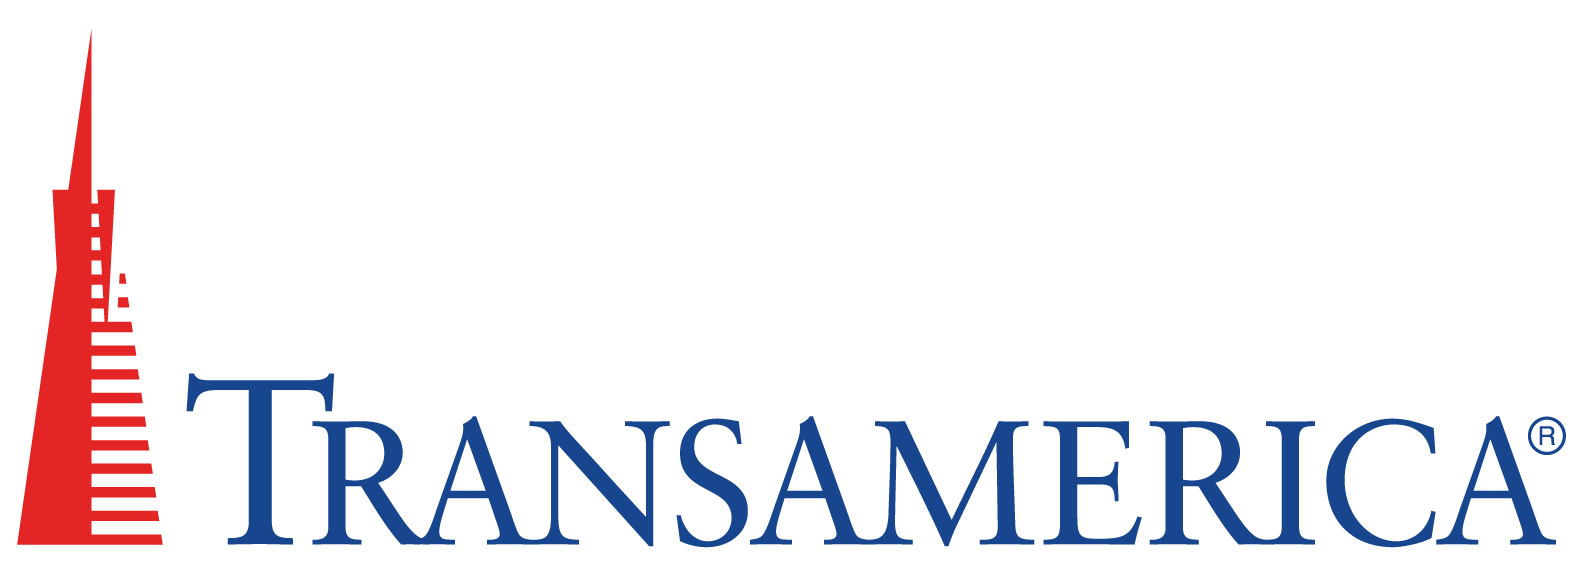 Transamerica-Logo-2color